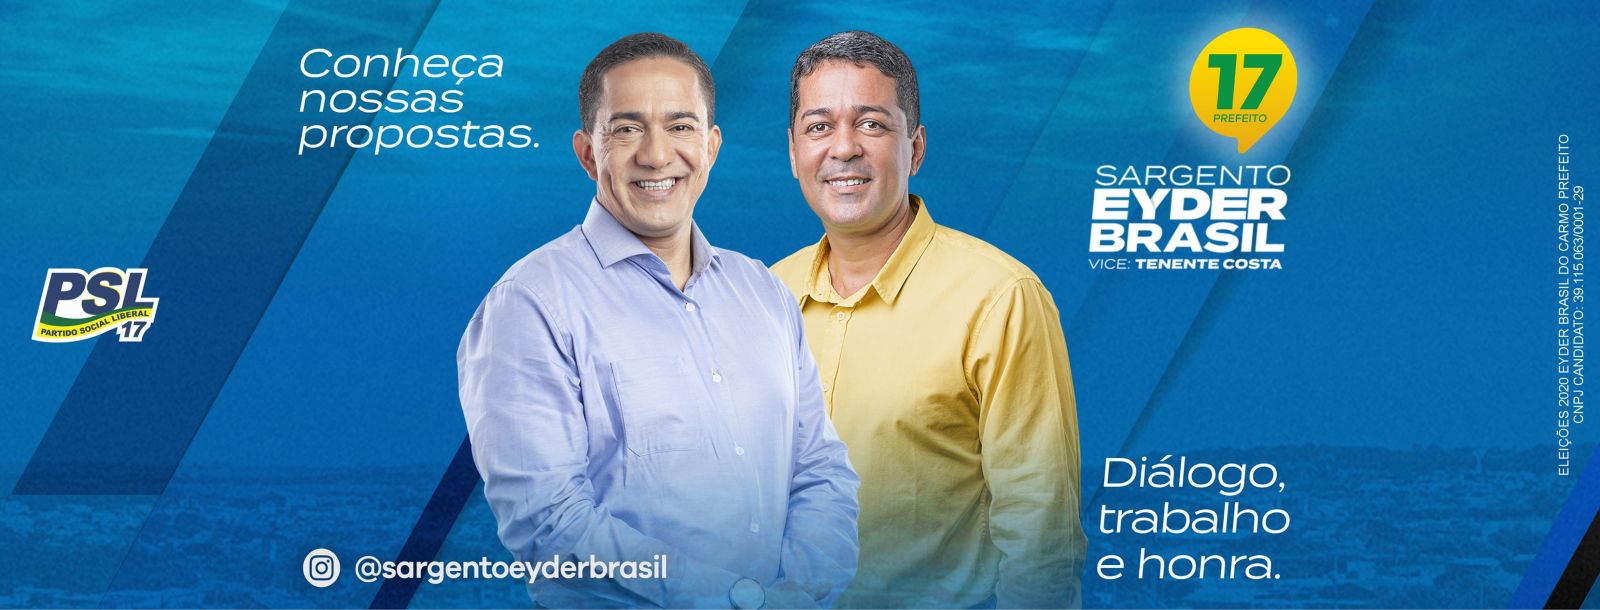 Confira a agenda do candidato Sargento Eyder Brasil e Vice Tenente Costa - News Rondônia